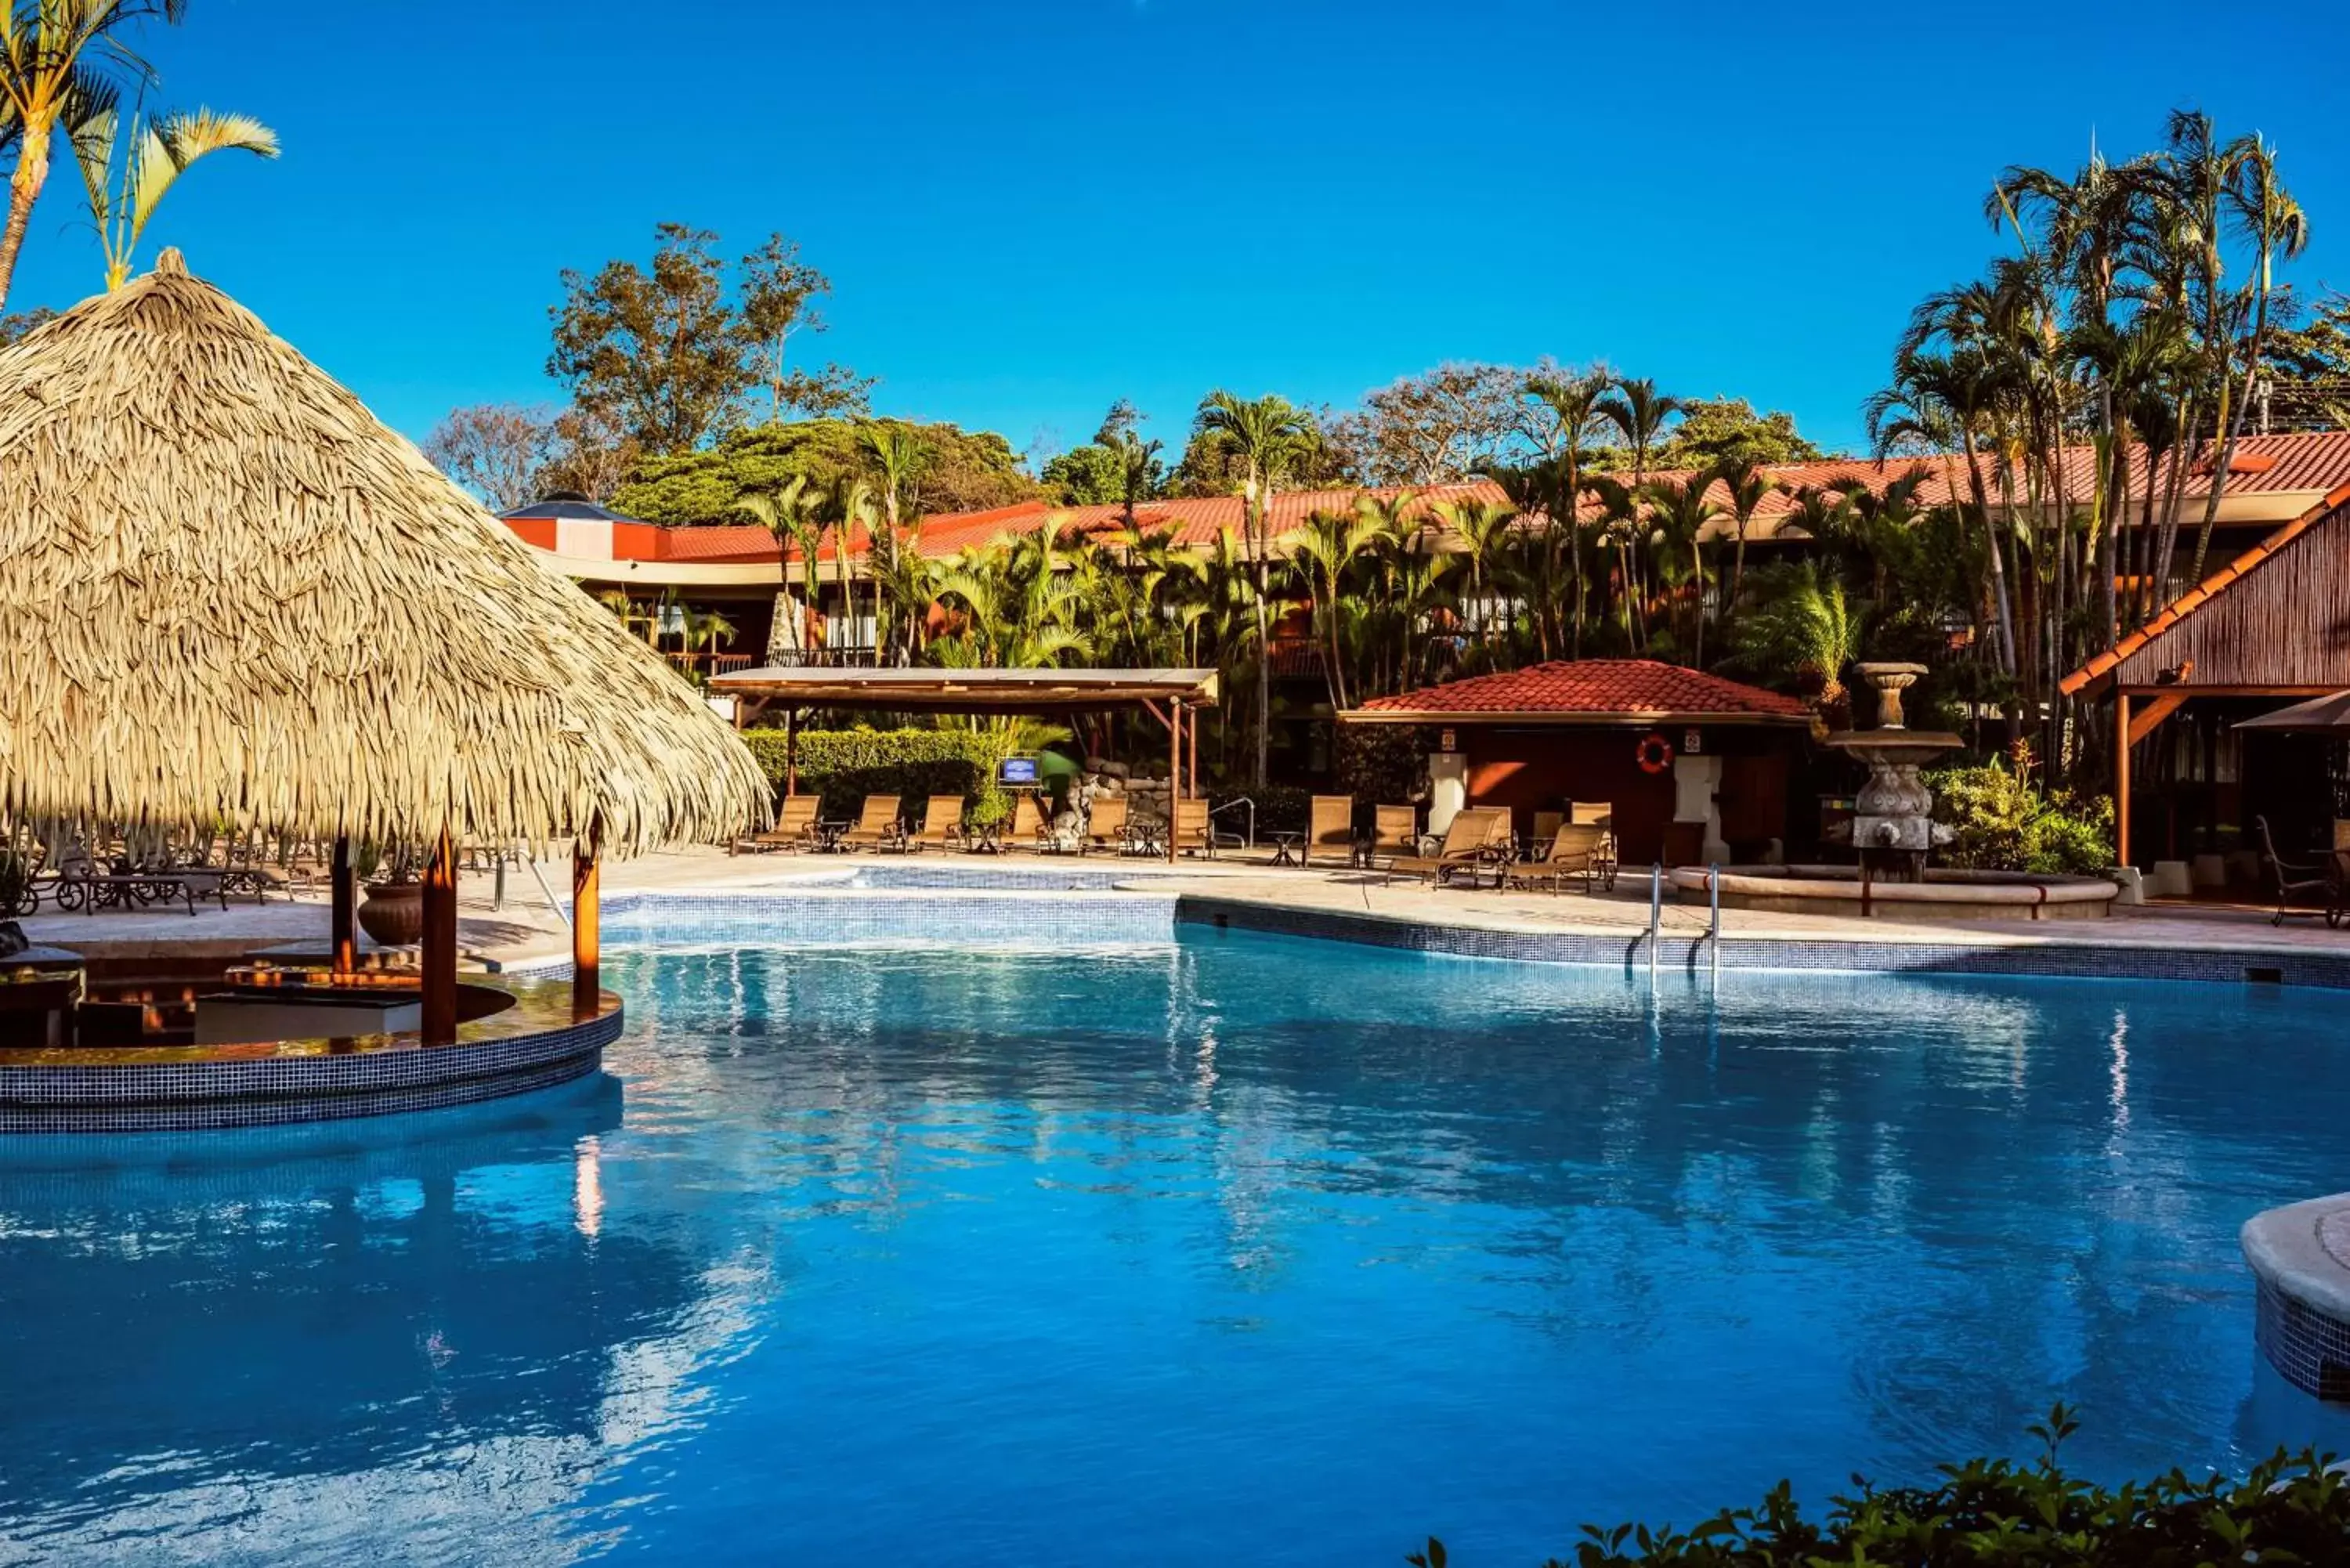 Pool view, Swimming Pool in Hilton Cariari DoubleTree San Jose - Costa Rica